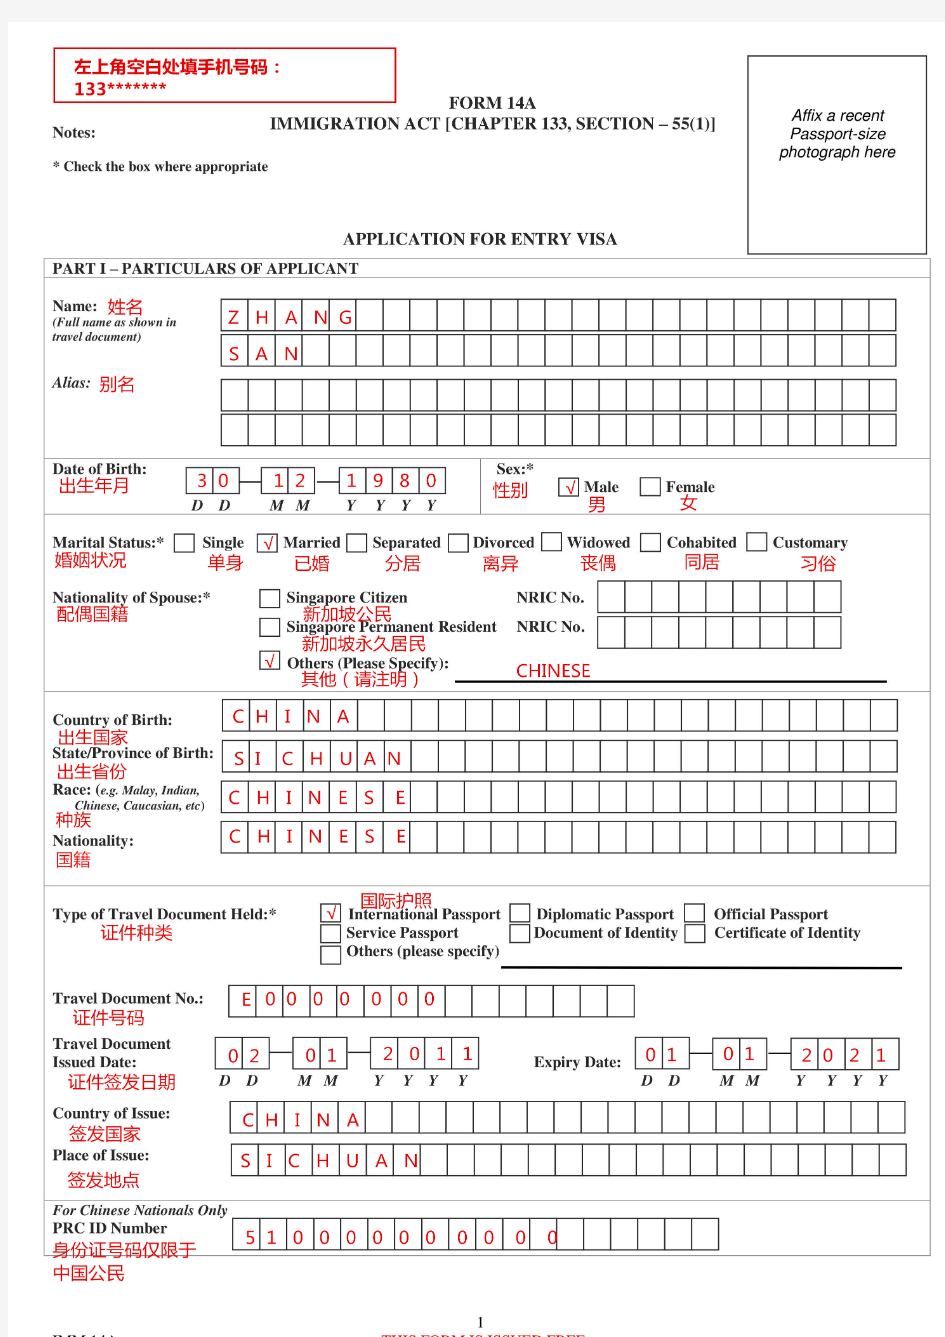 新版新加坡签证申请表填写模板(FORM 14A表)